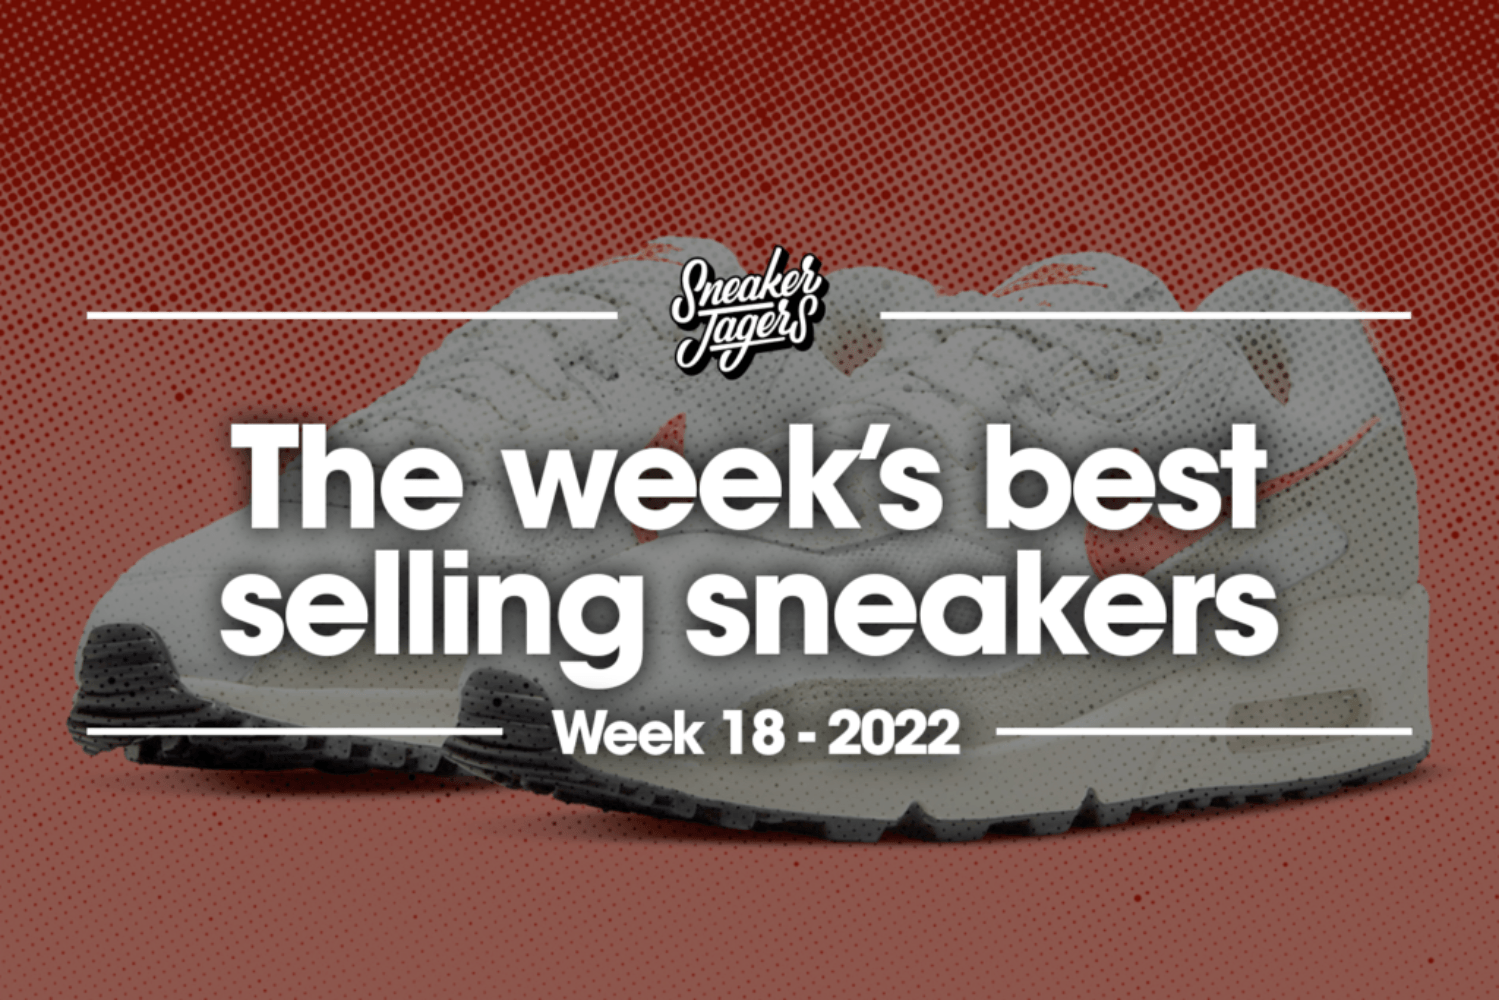 The 5 best-selling sneakers of week 18